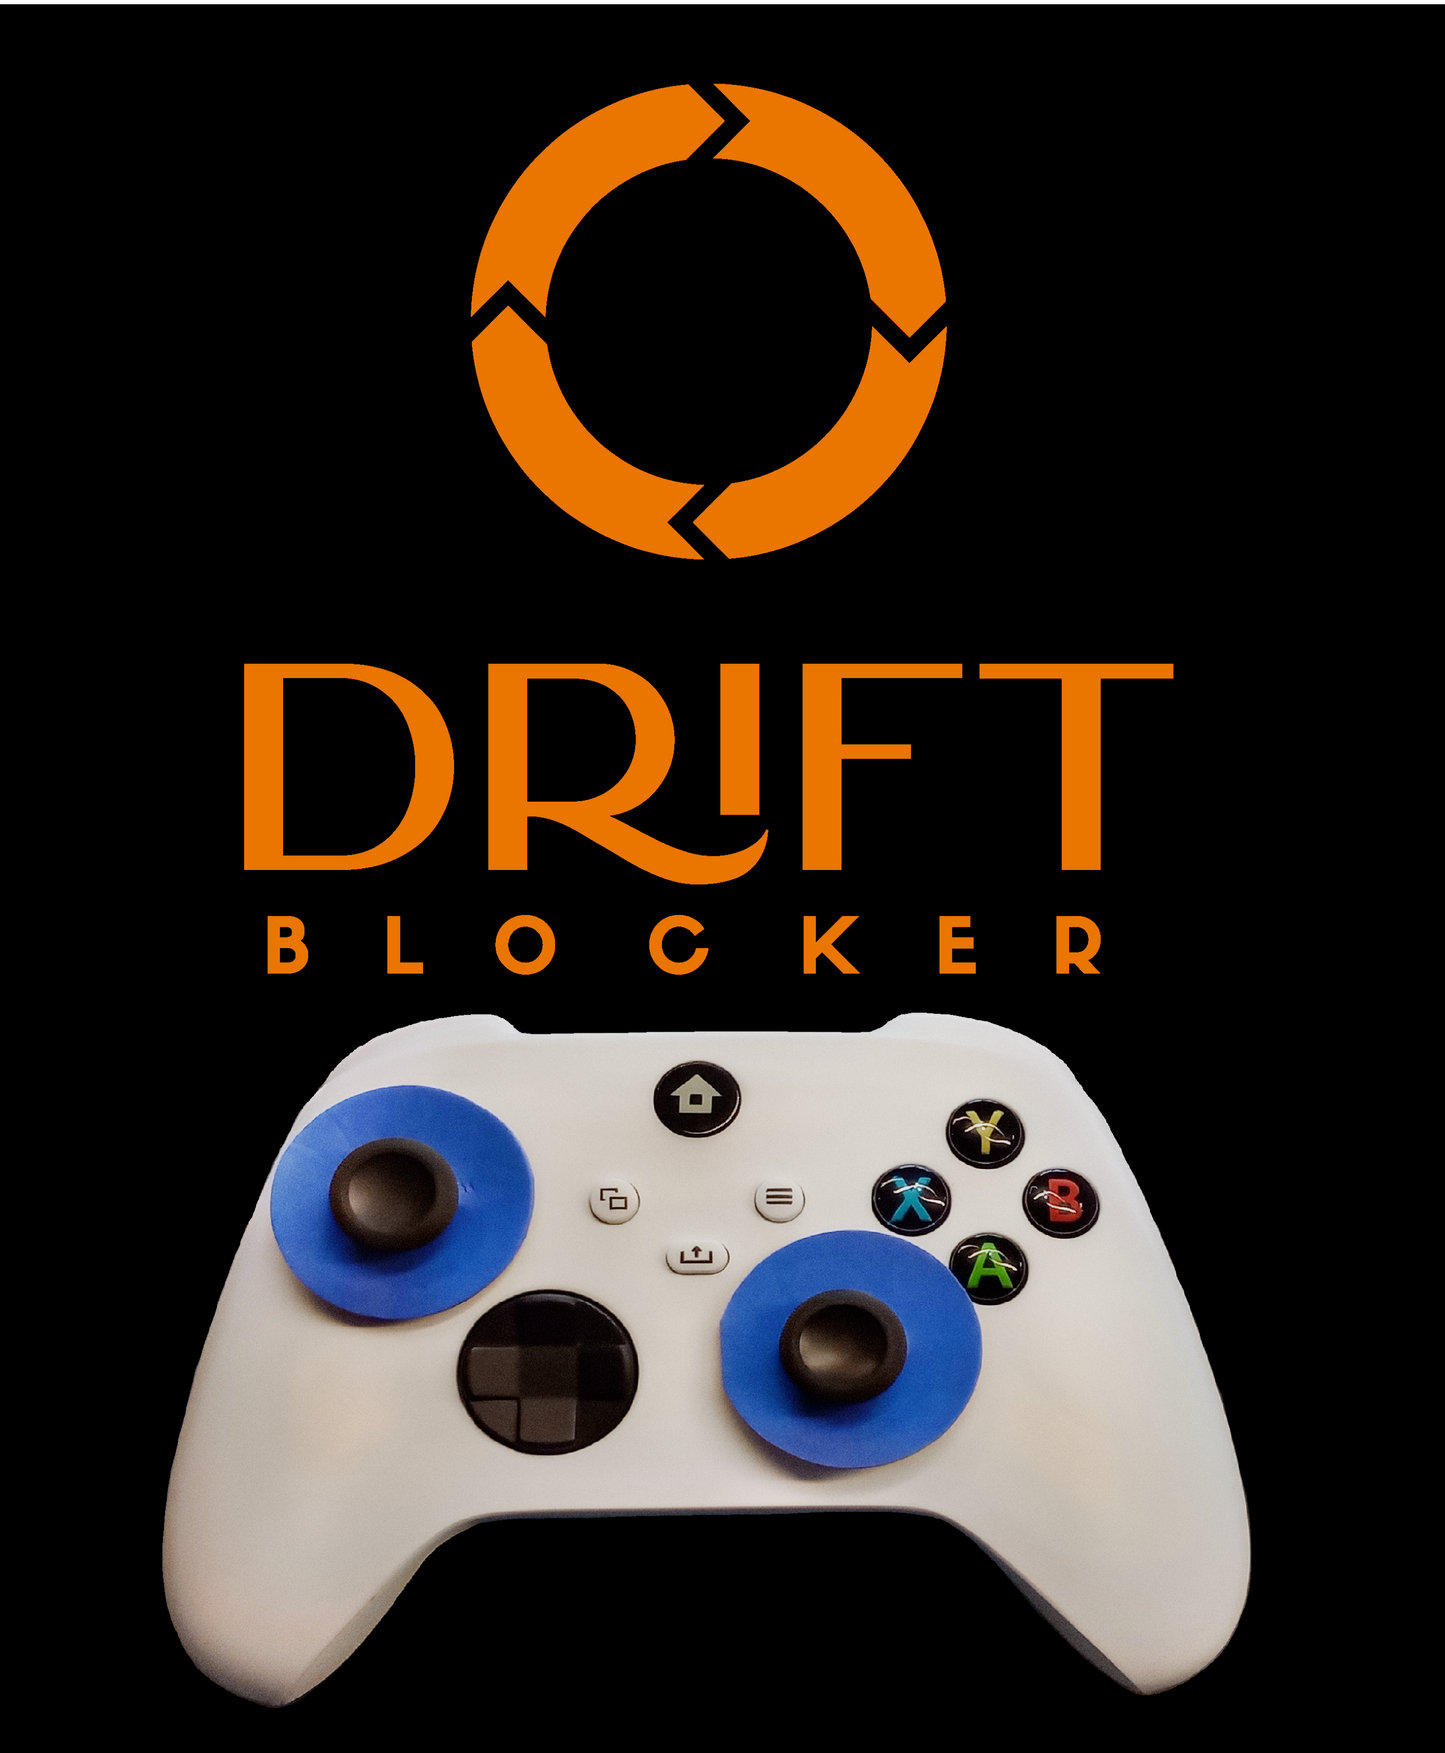 Drift Blocker - Xbox One \ X \ S Controller